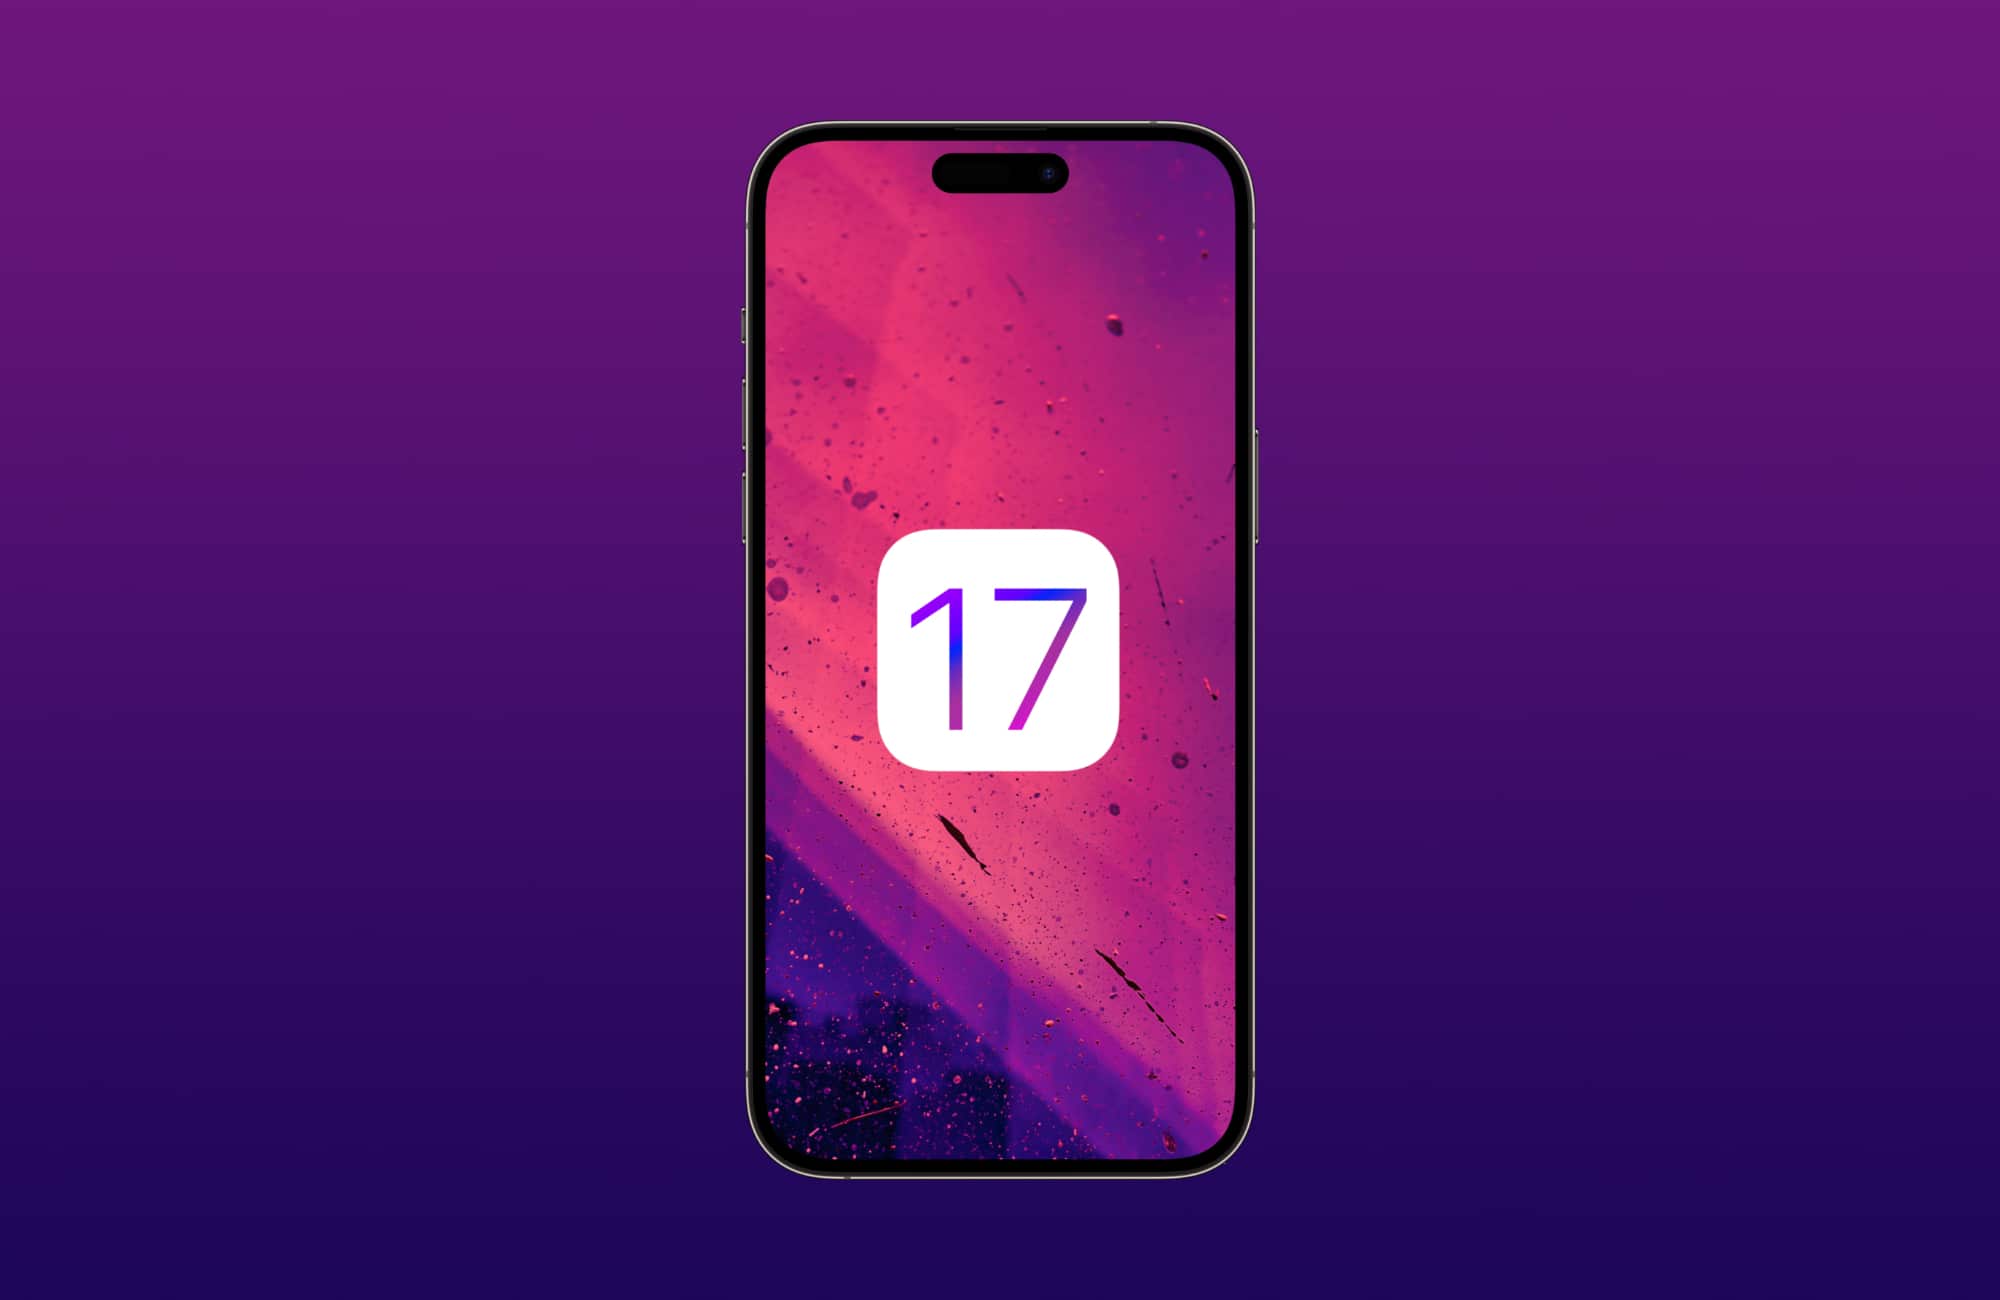 iOS 17-Banner mit "17" auf einem iPhone und violettem Farbverlauf im Hintergrund